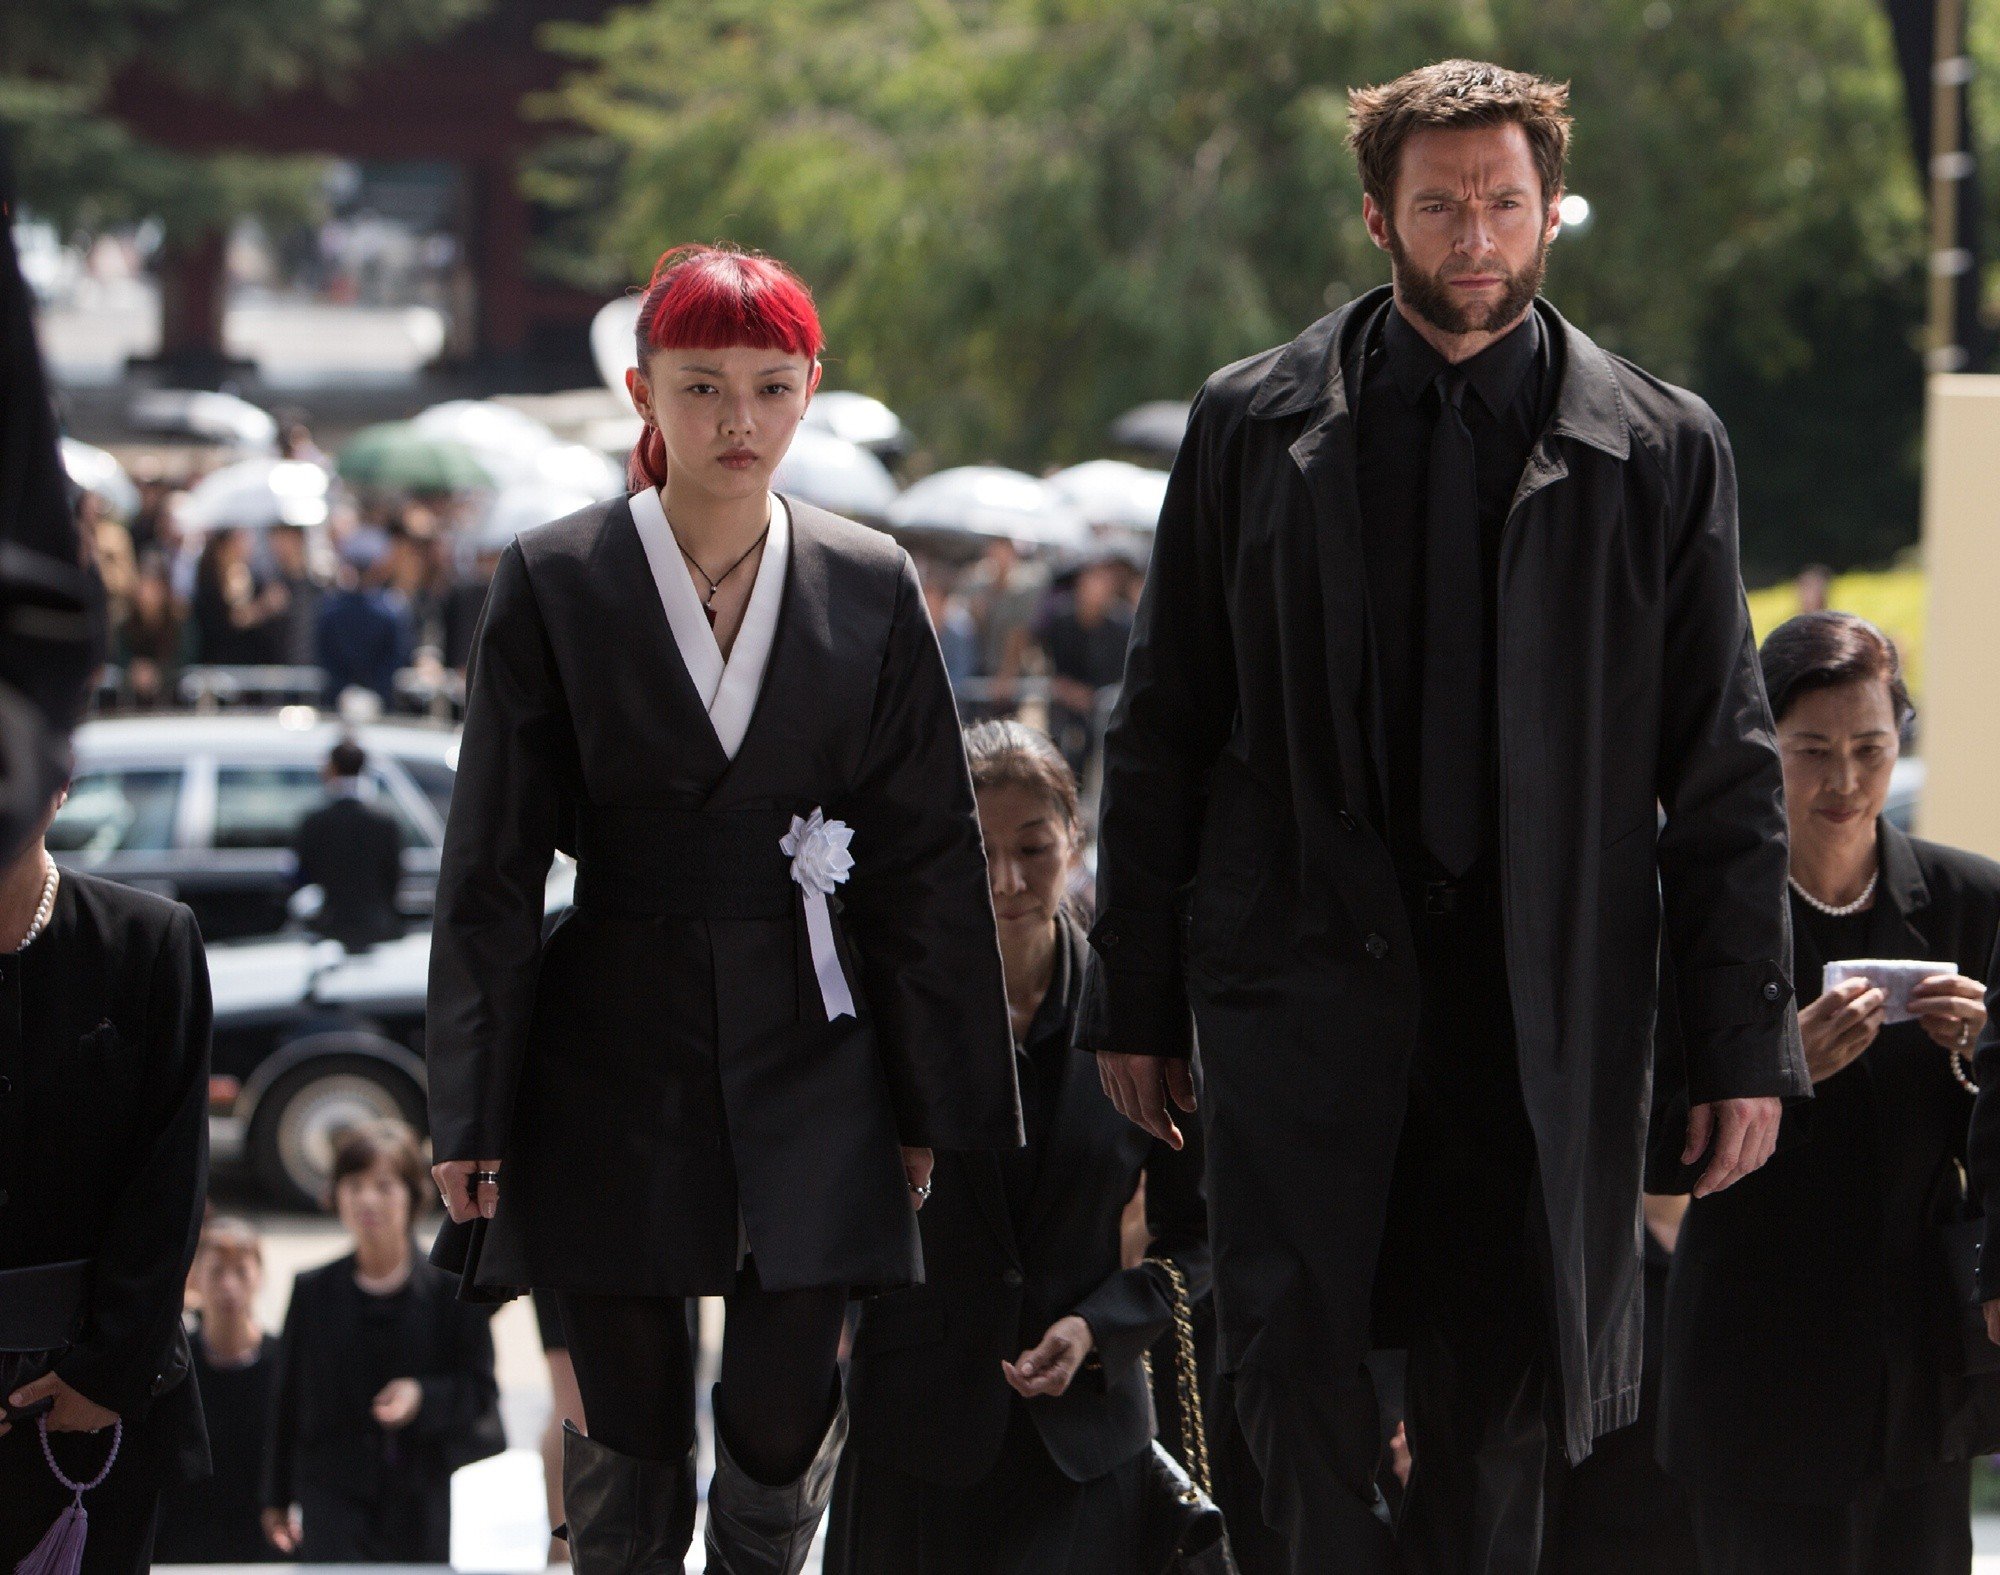 Rila Fukushima stars as Yukio and Hugh Jackman stars as Logan/Wolverine in 20th Century Fox's The Wolverine (2013)